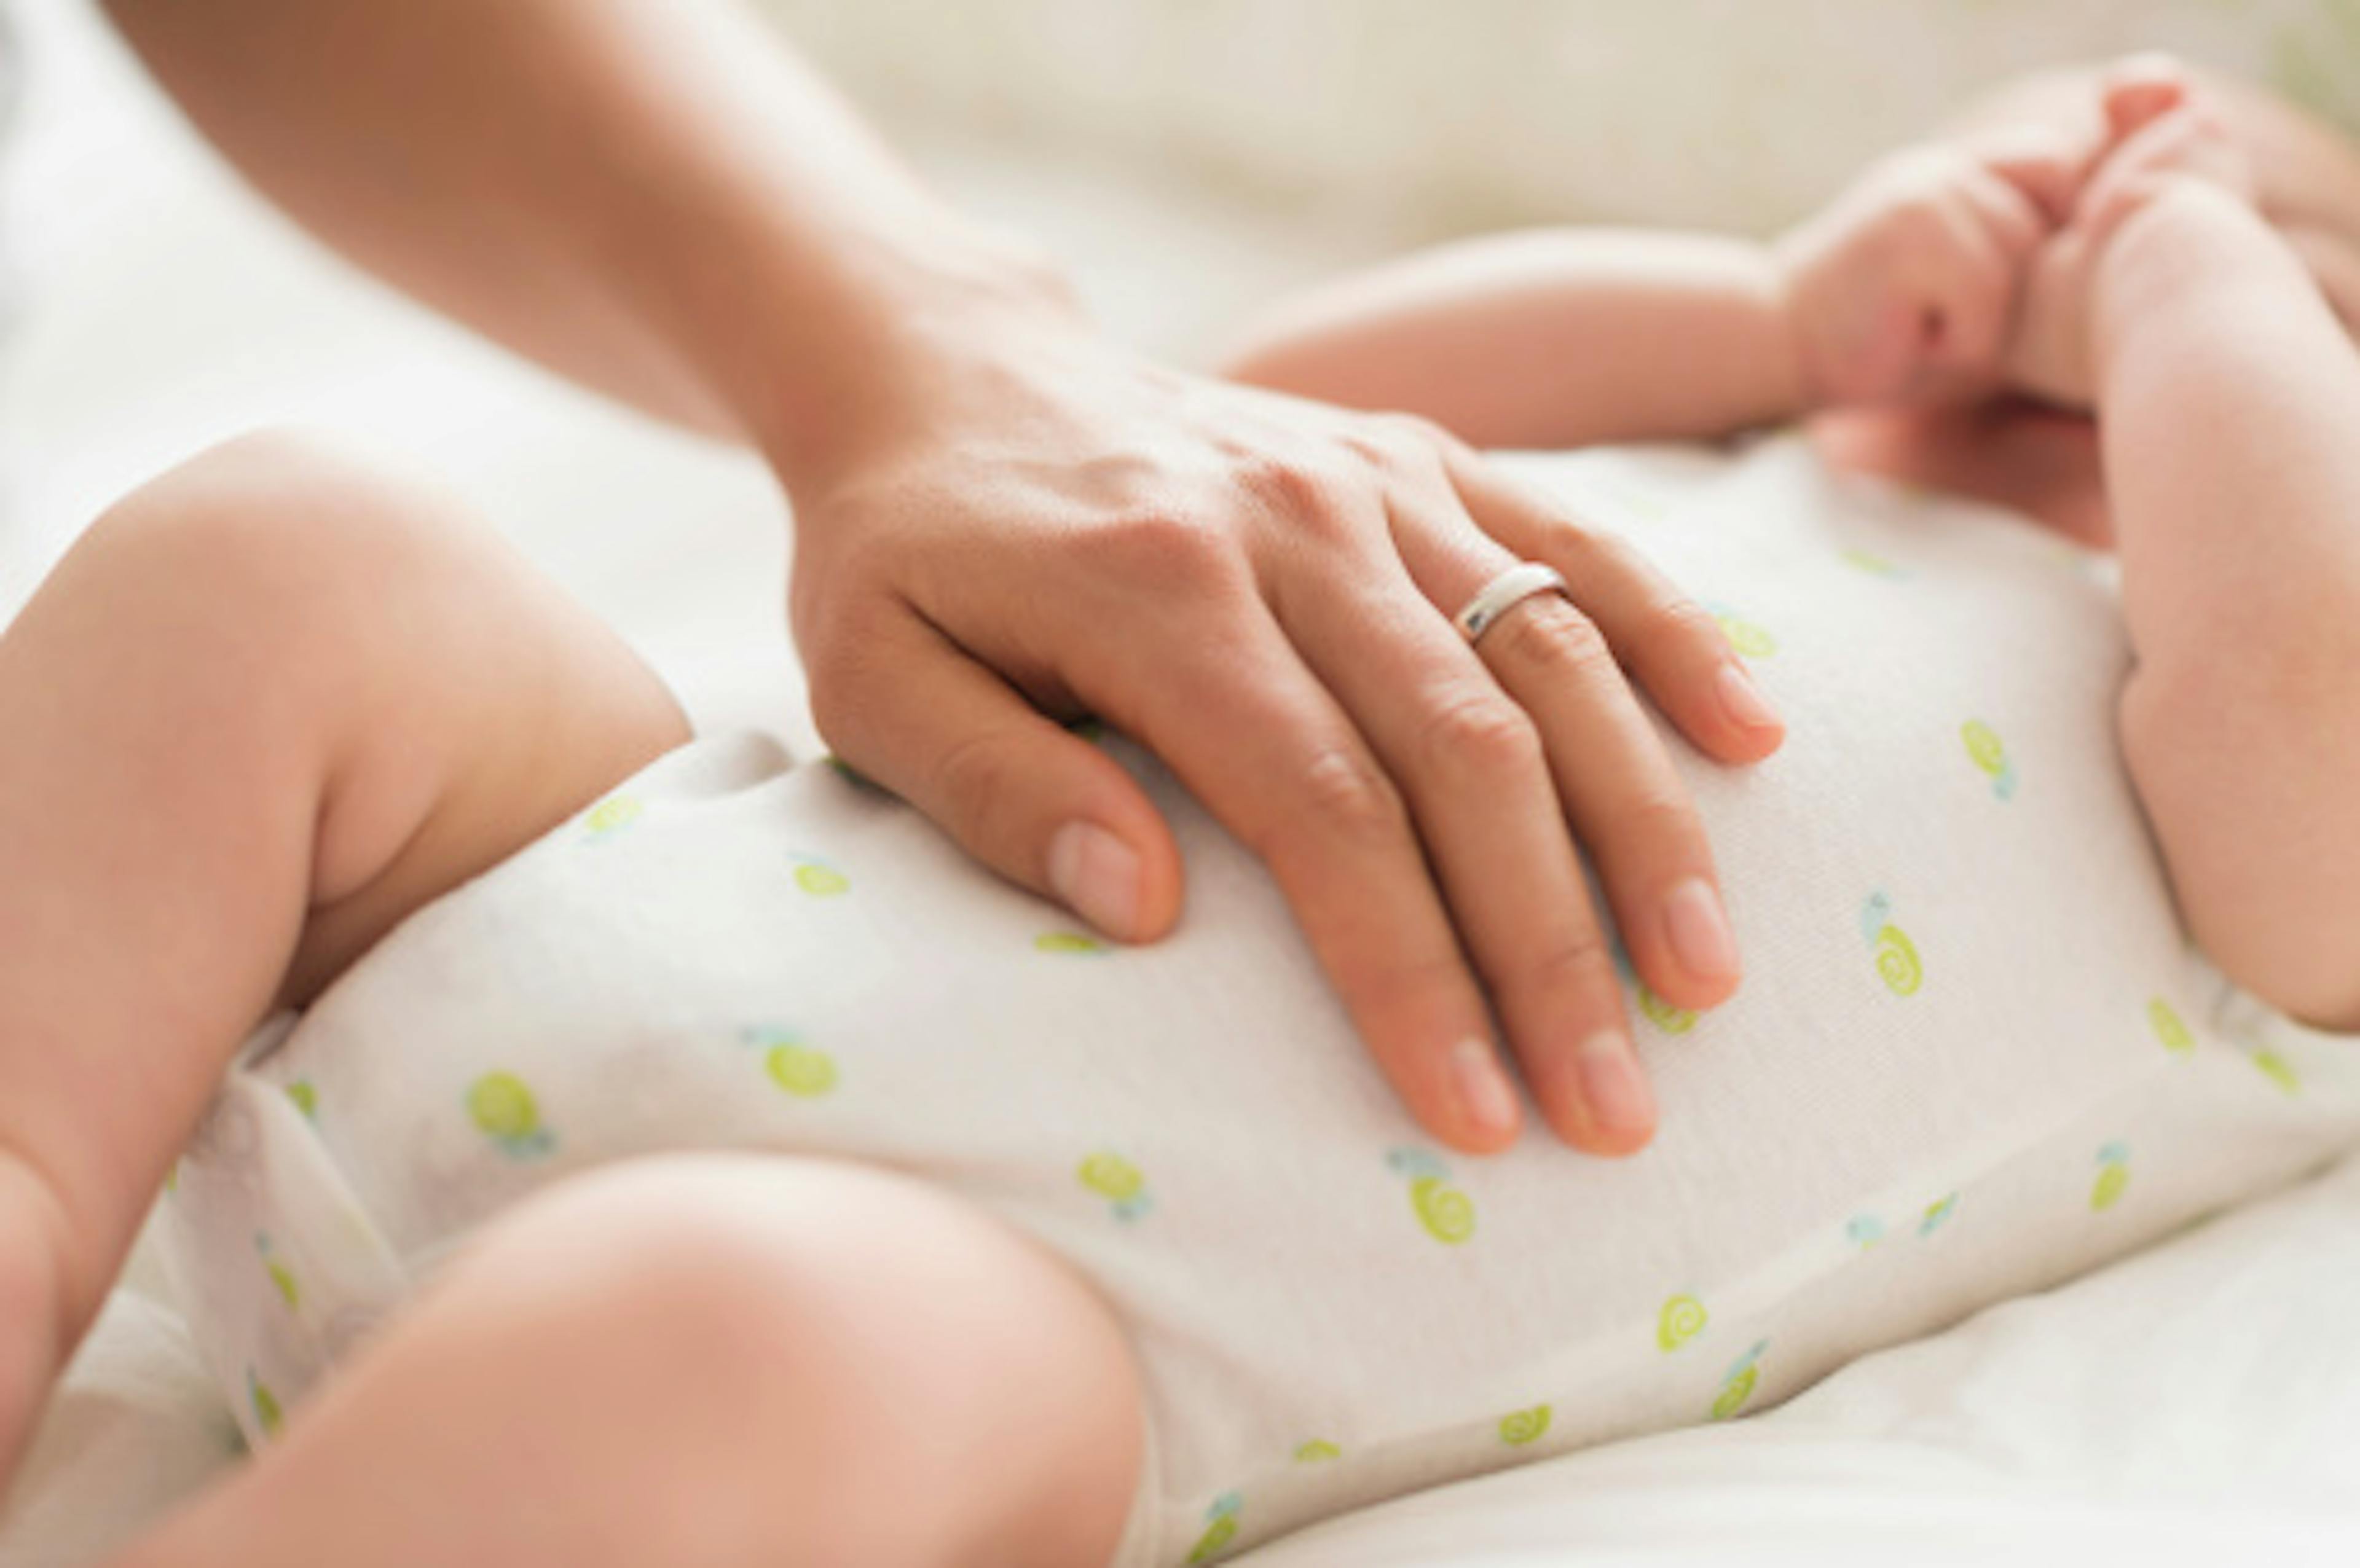 Le coliche gassose nel neonato: cause, sintomi e rimedi del disturbo